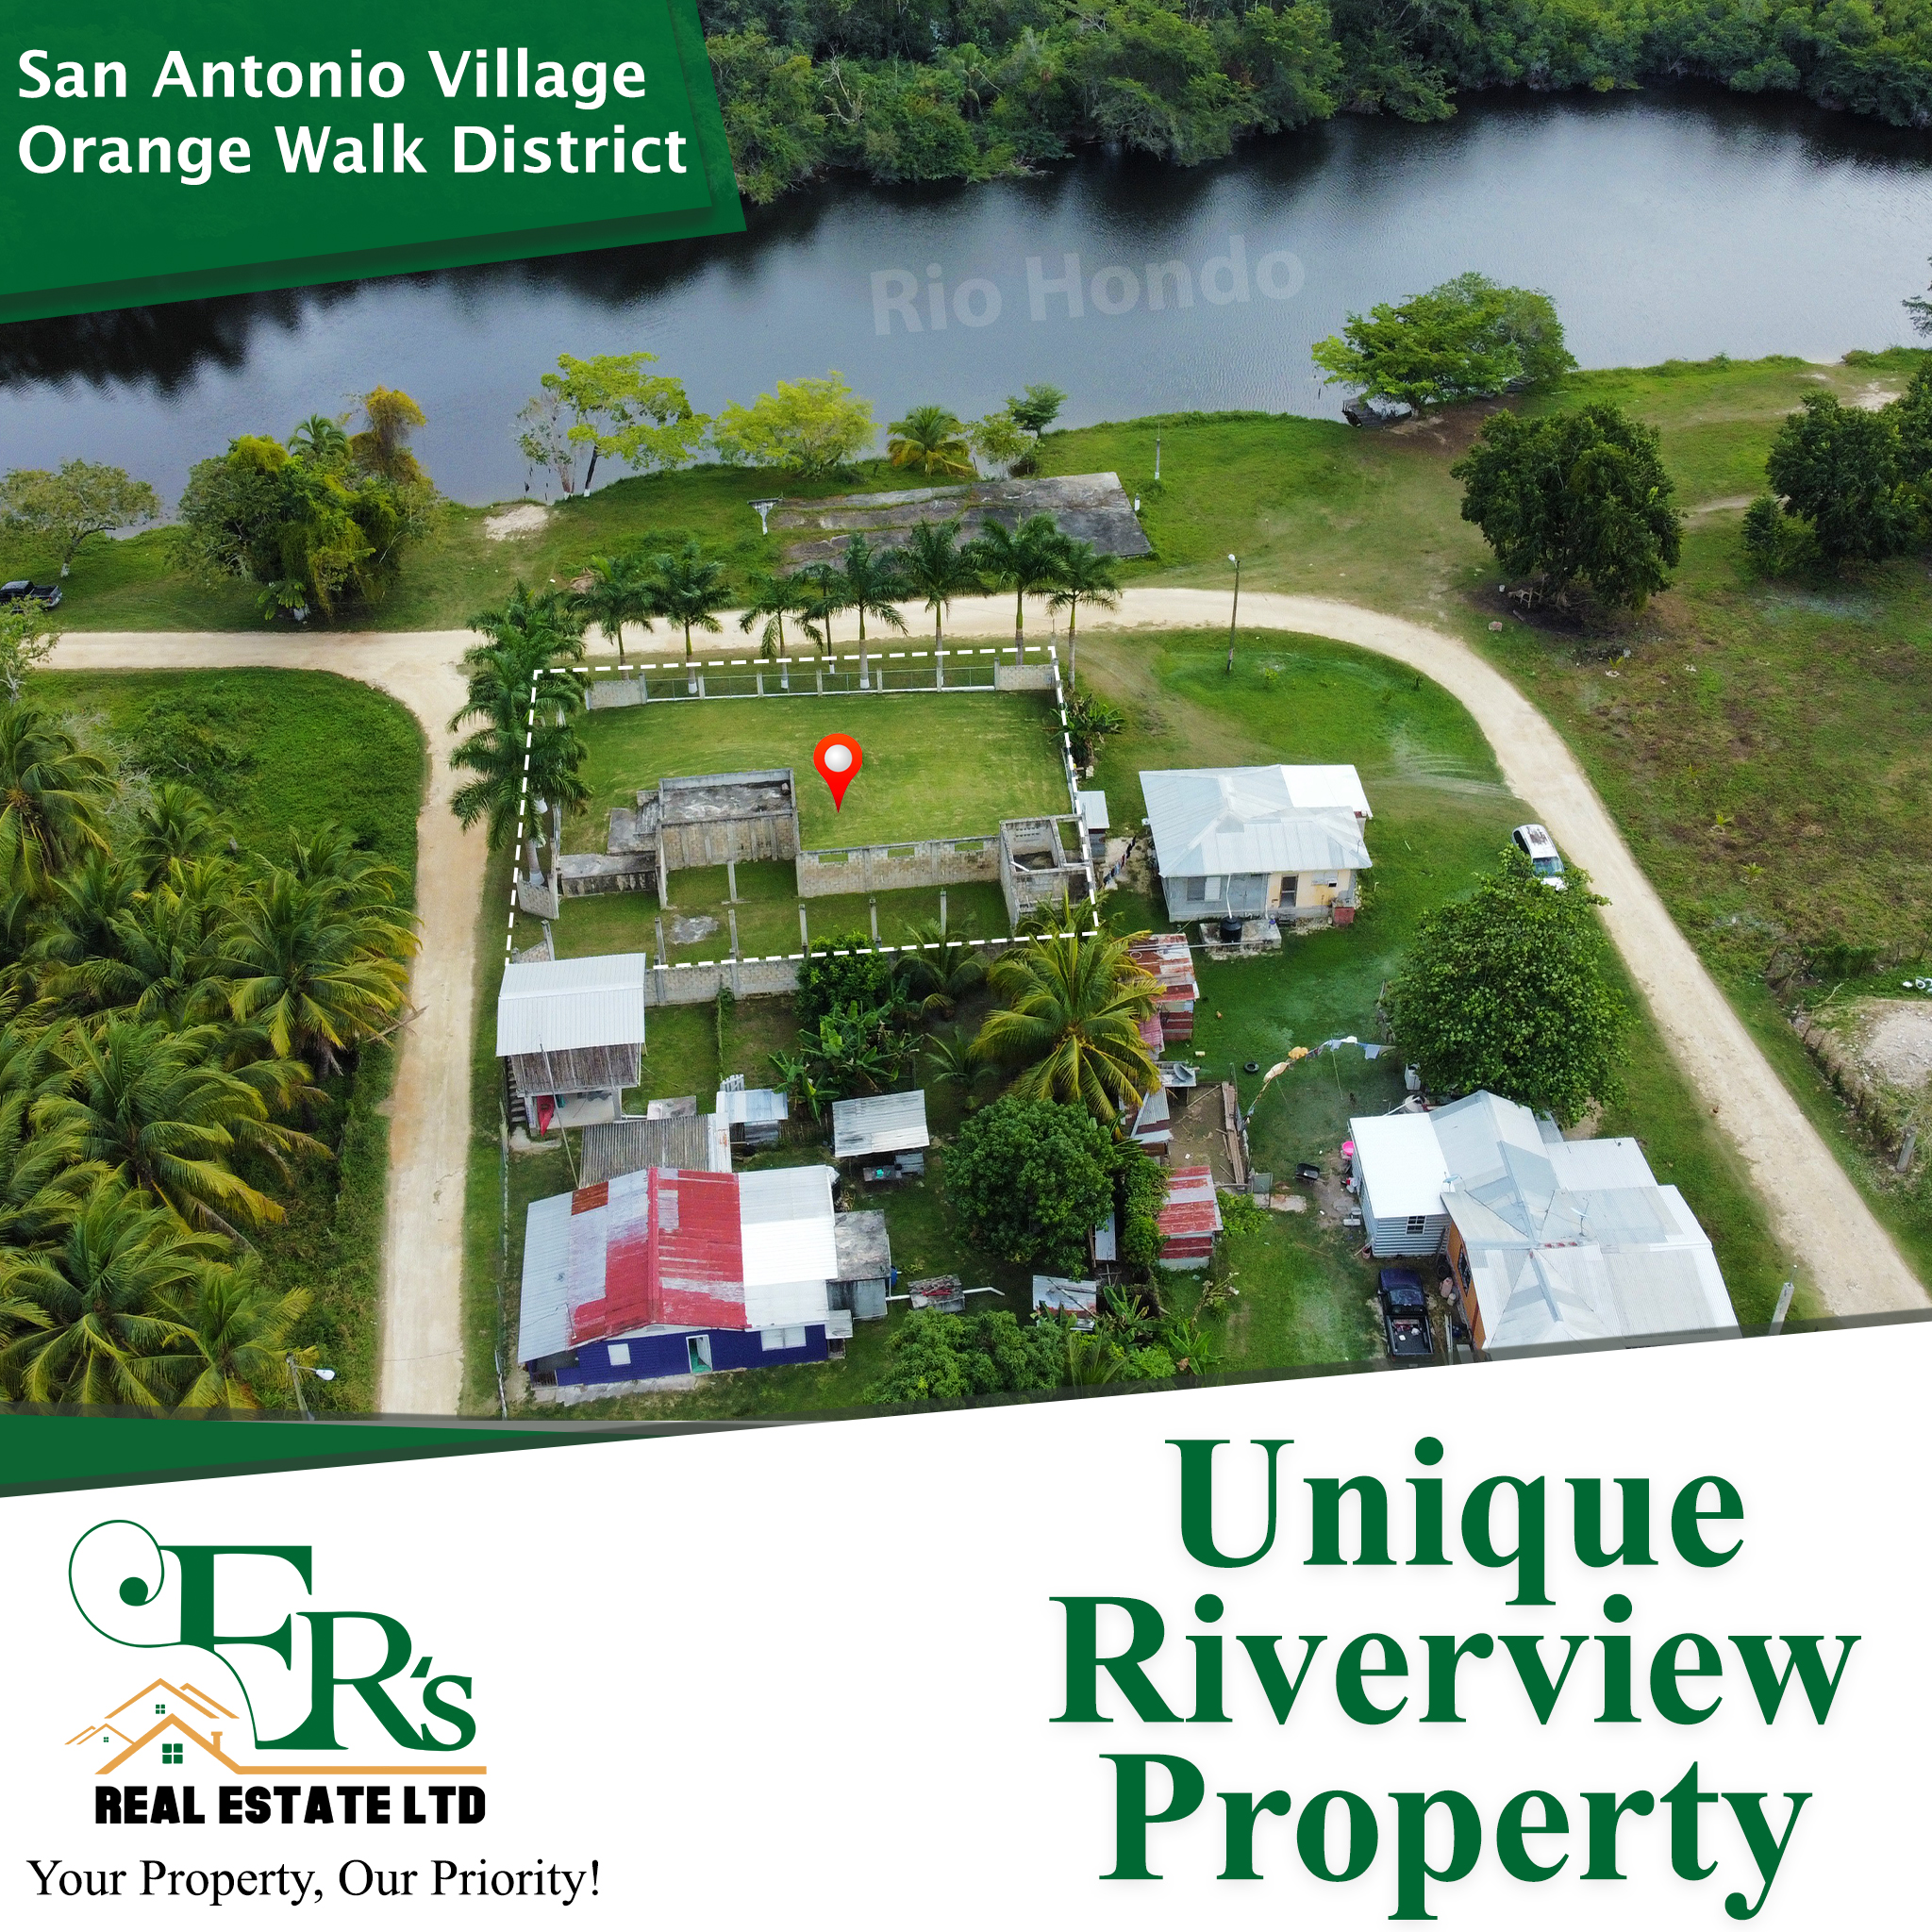 Unique Riverview Property